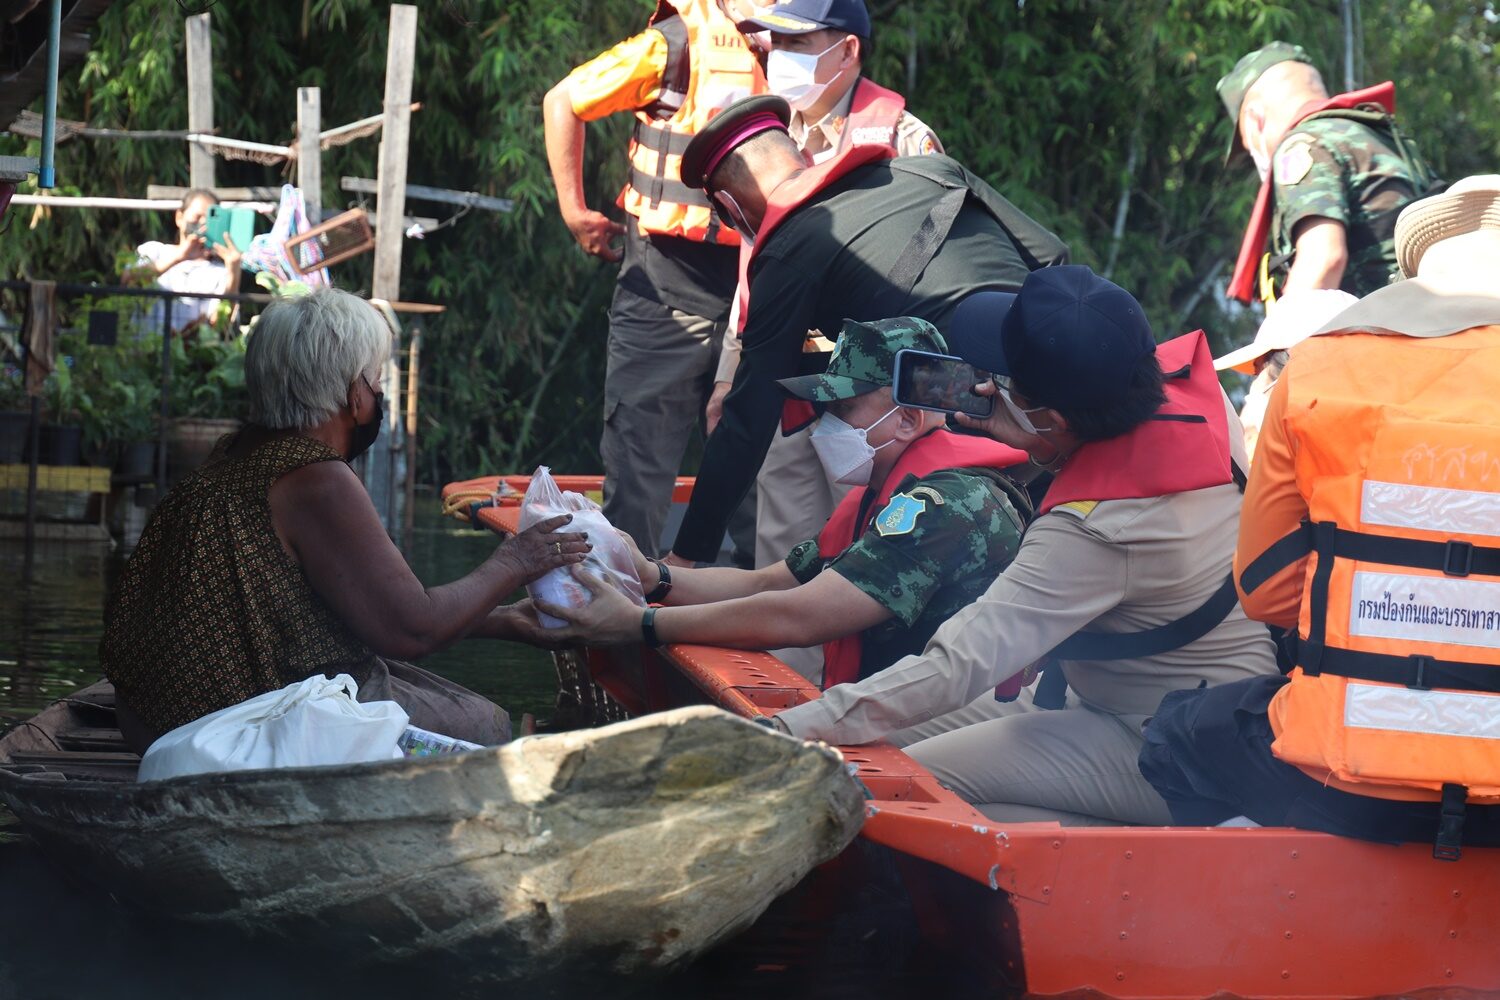 แม่ทัพภาคที่ 1 ล่องเรือมอบสิ่งของช่วยผู้ประสบภัยน้ำท่วม บางปลาม้ายังอ่วมหลังน้ำผันลงทุ่ง